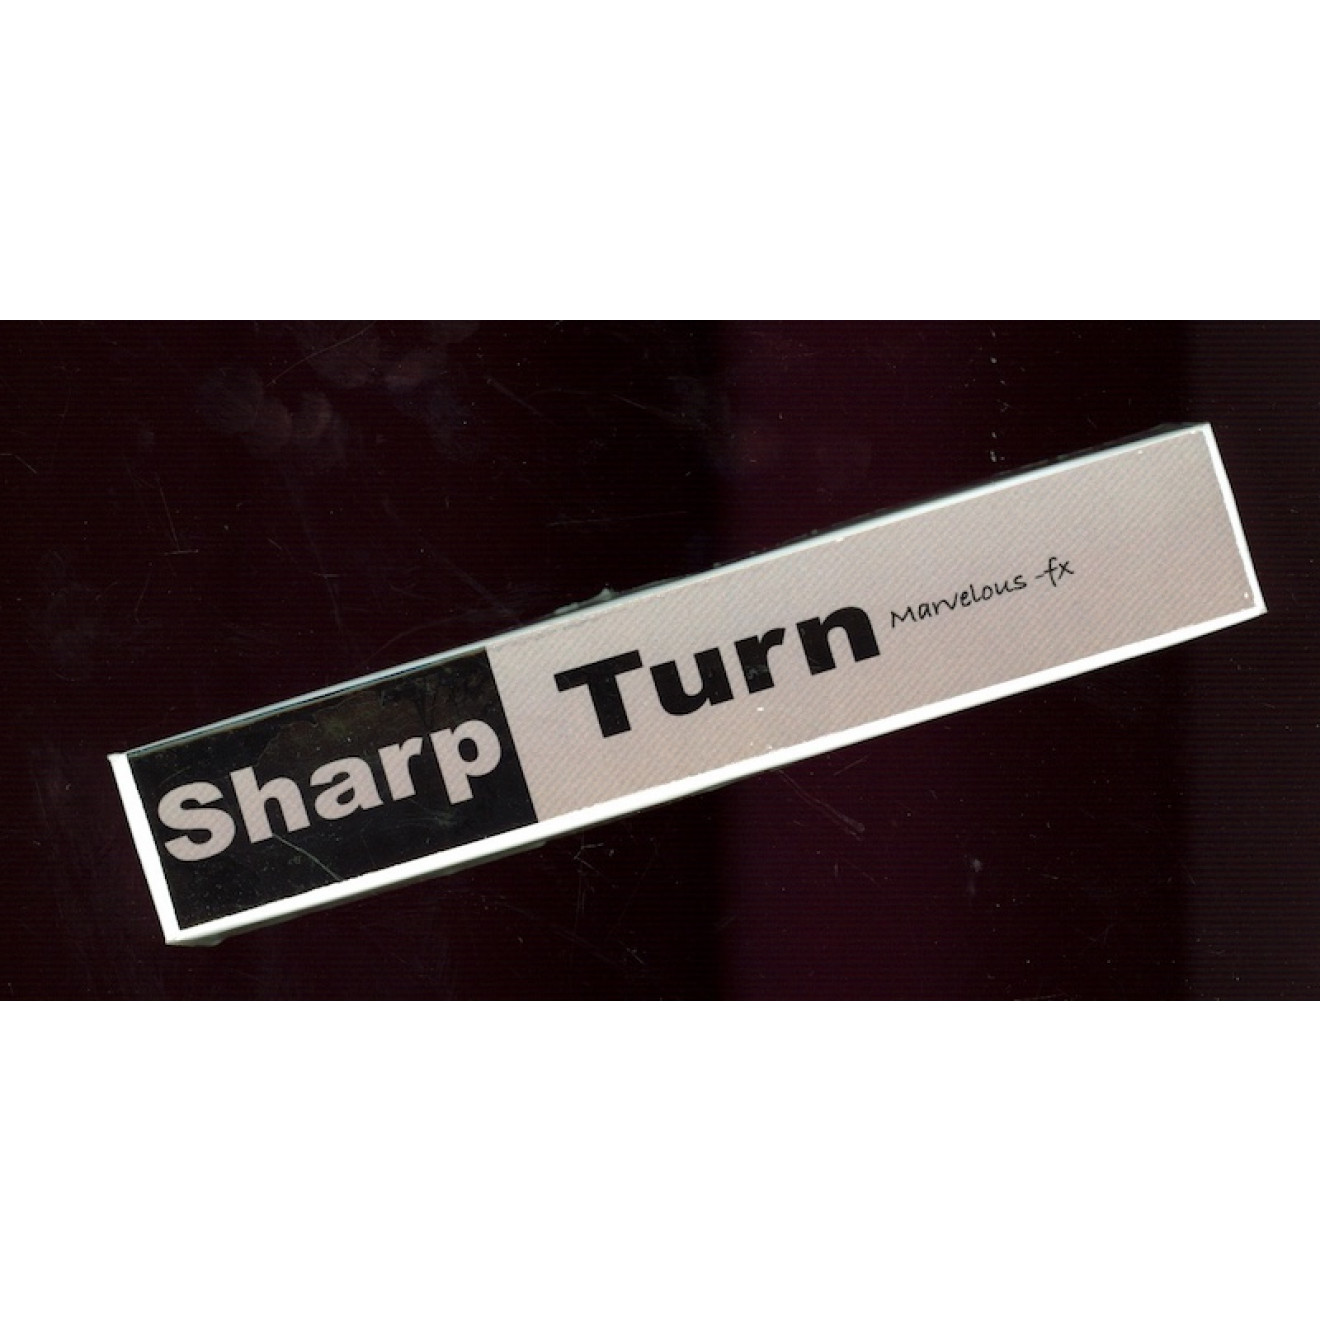 Sharp Turn